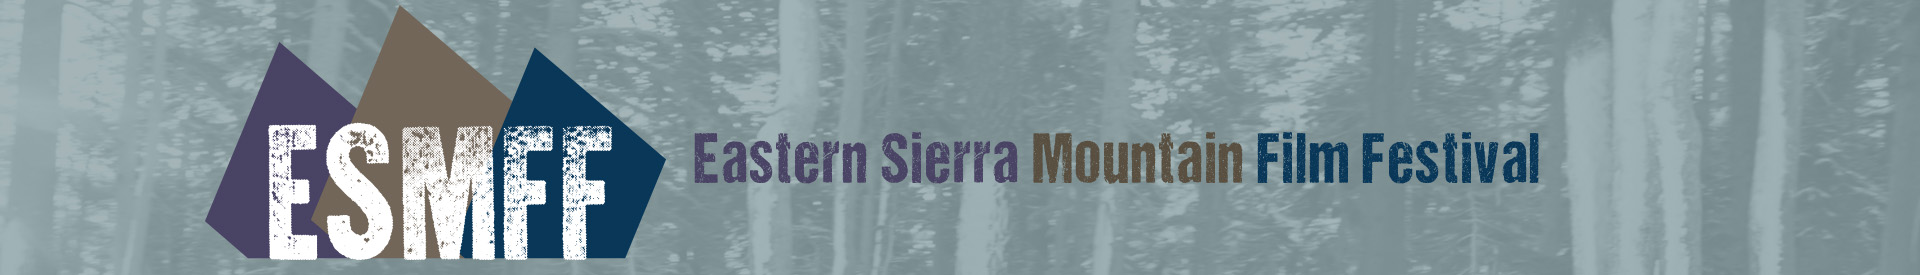 Eastern Sierra Mountain Film Festival